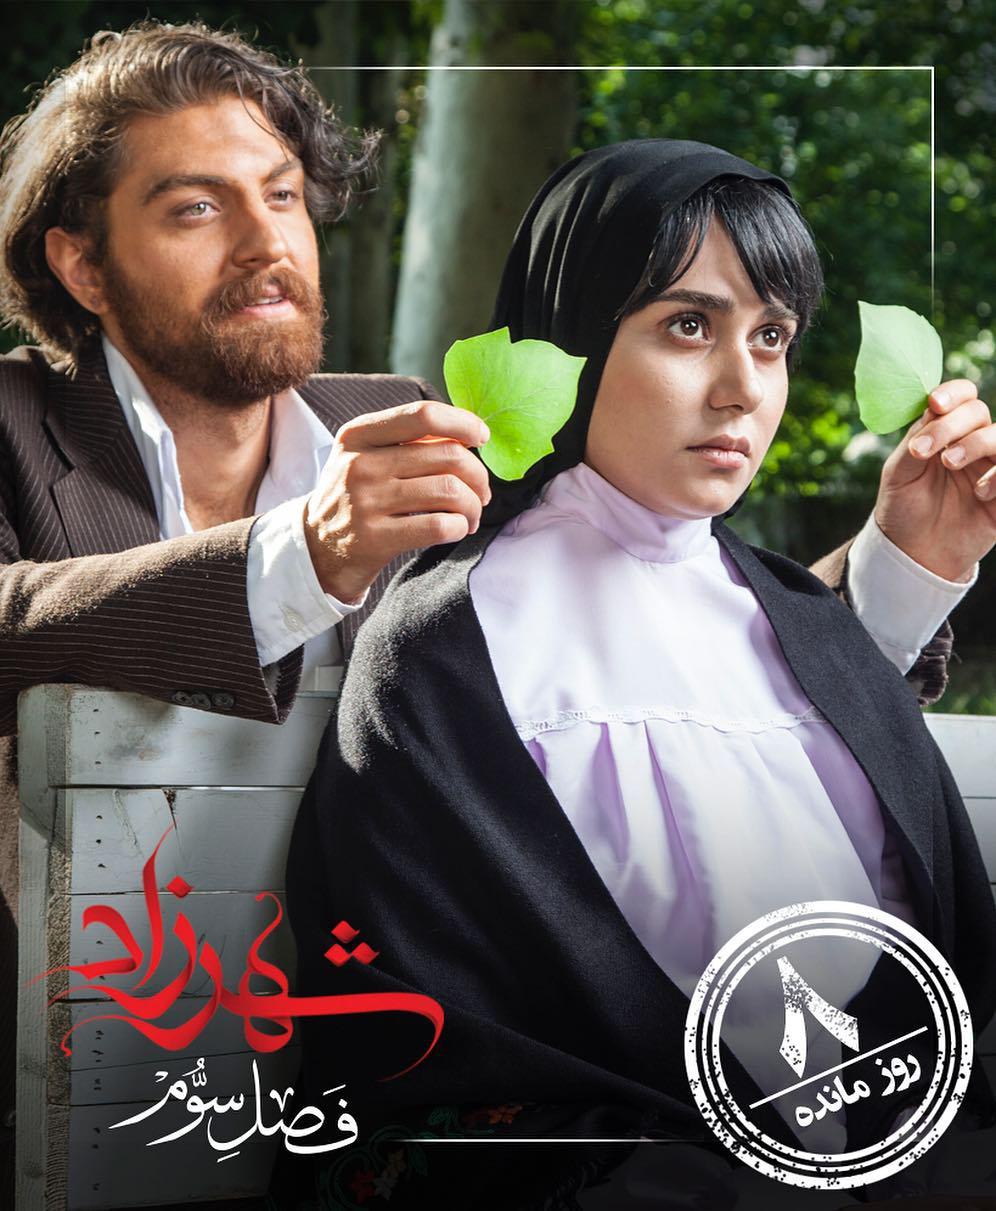 امیرحسین فتحی در پوستر سریال تلویزیونی شهرزاد 3 به همراه پریناز ایزدیار